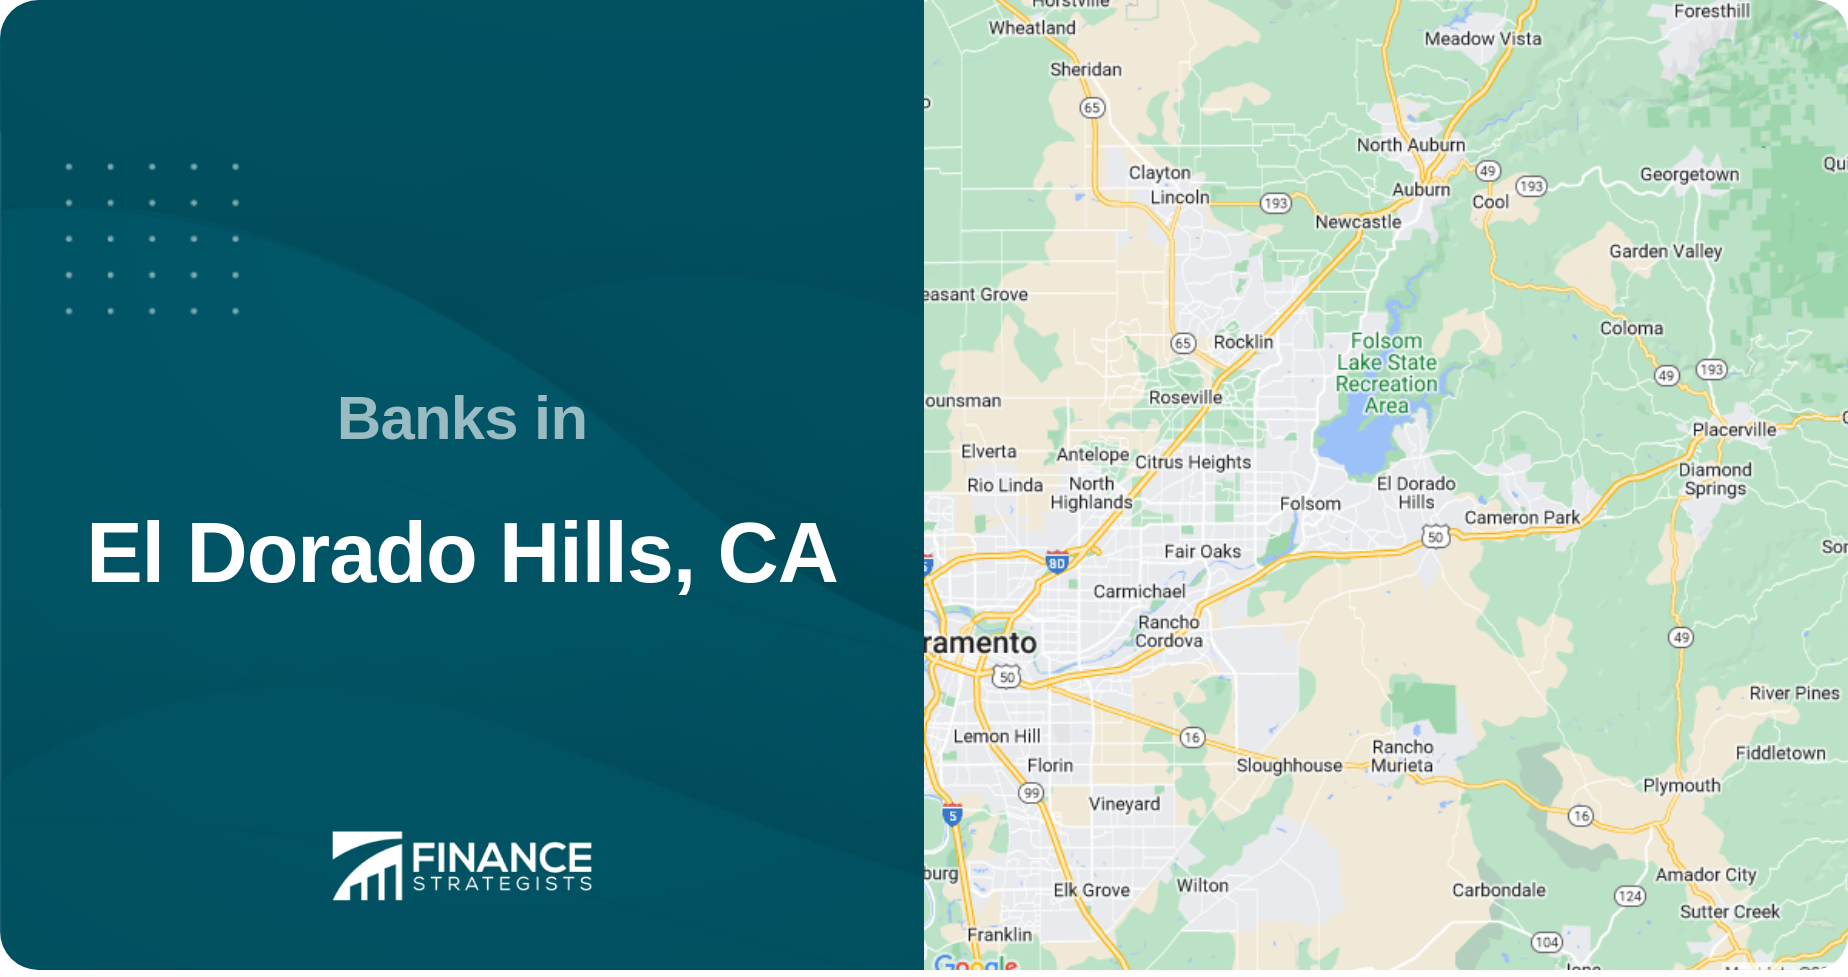 Banks in El Dorado Hills, CA